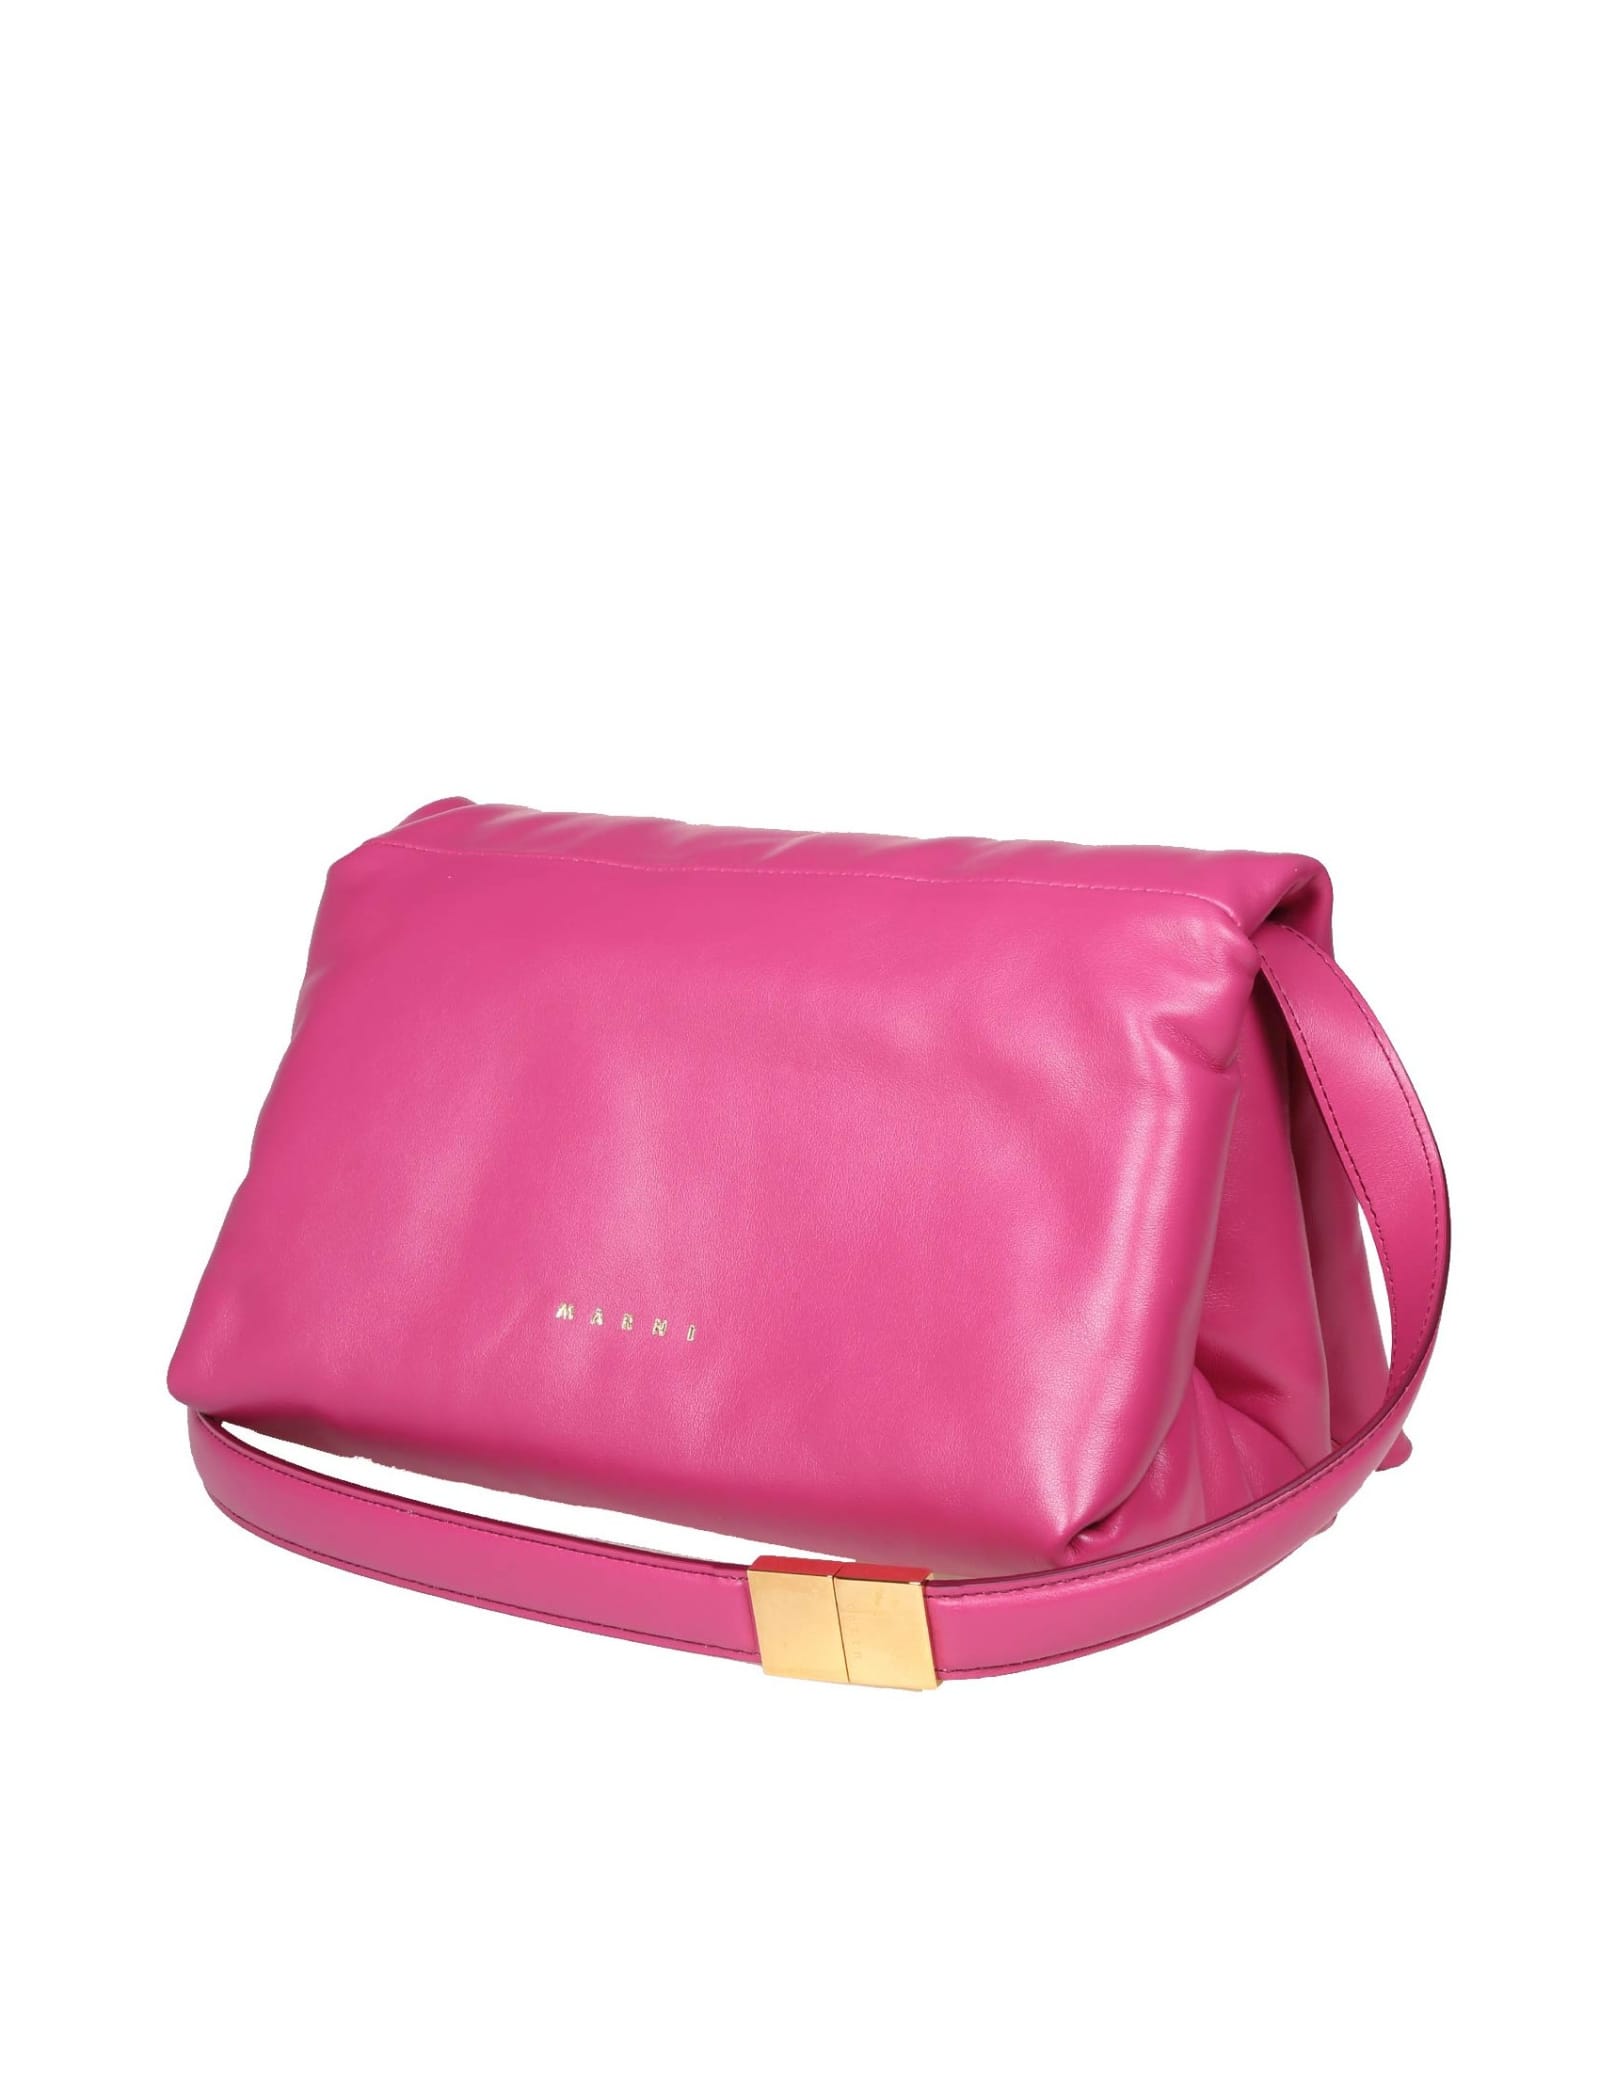 Marni Prisma Shoulder Bag In Fuchsia Color Leather